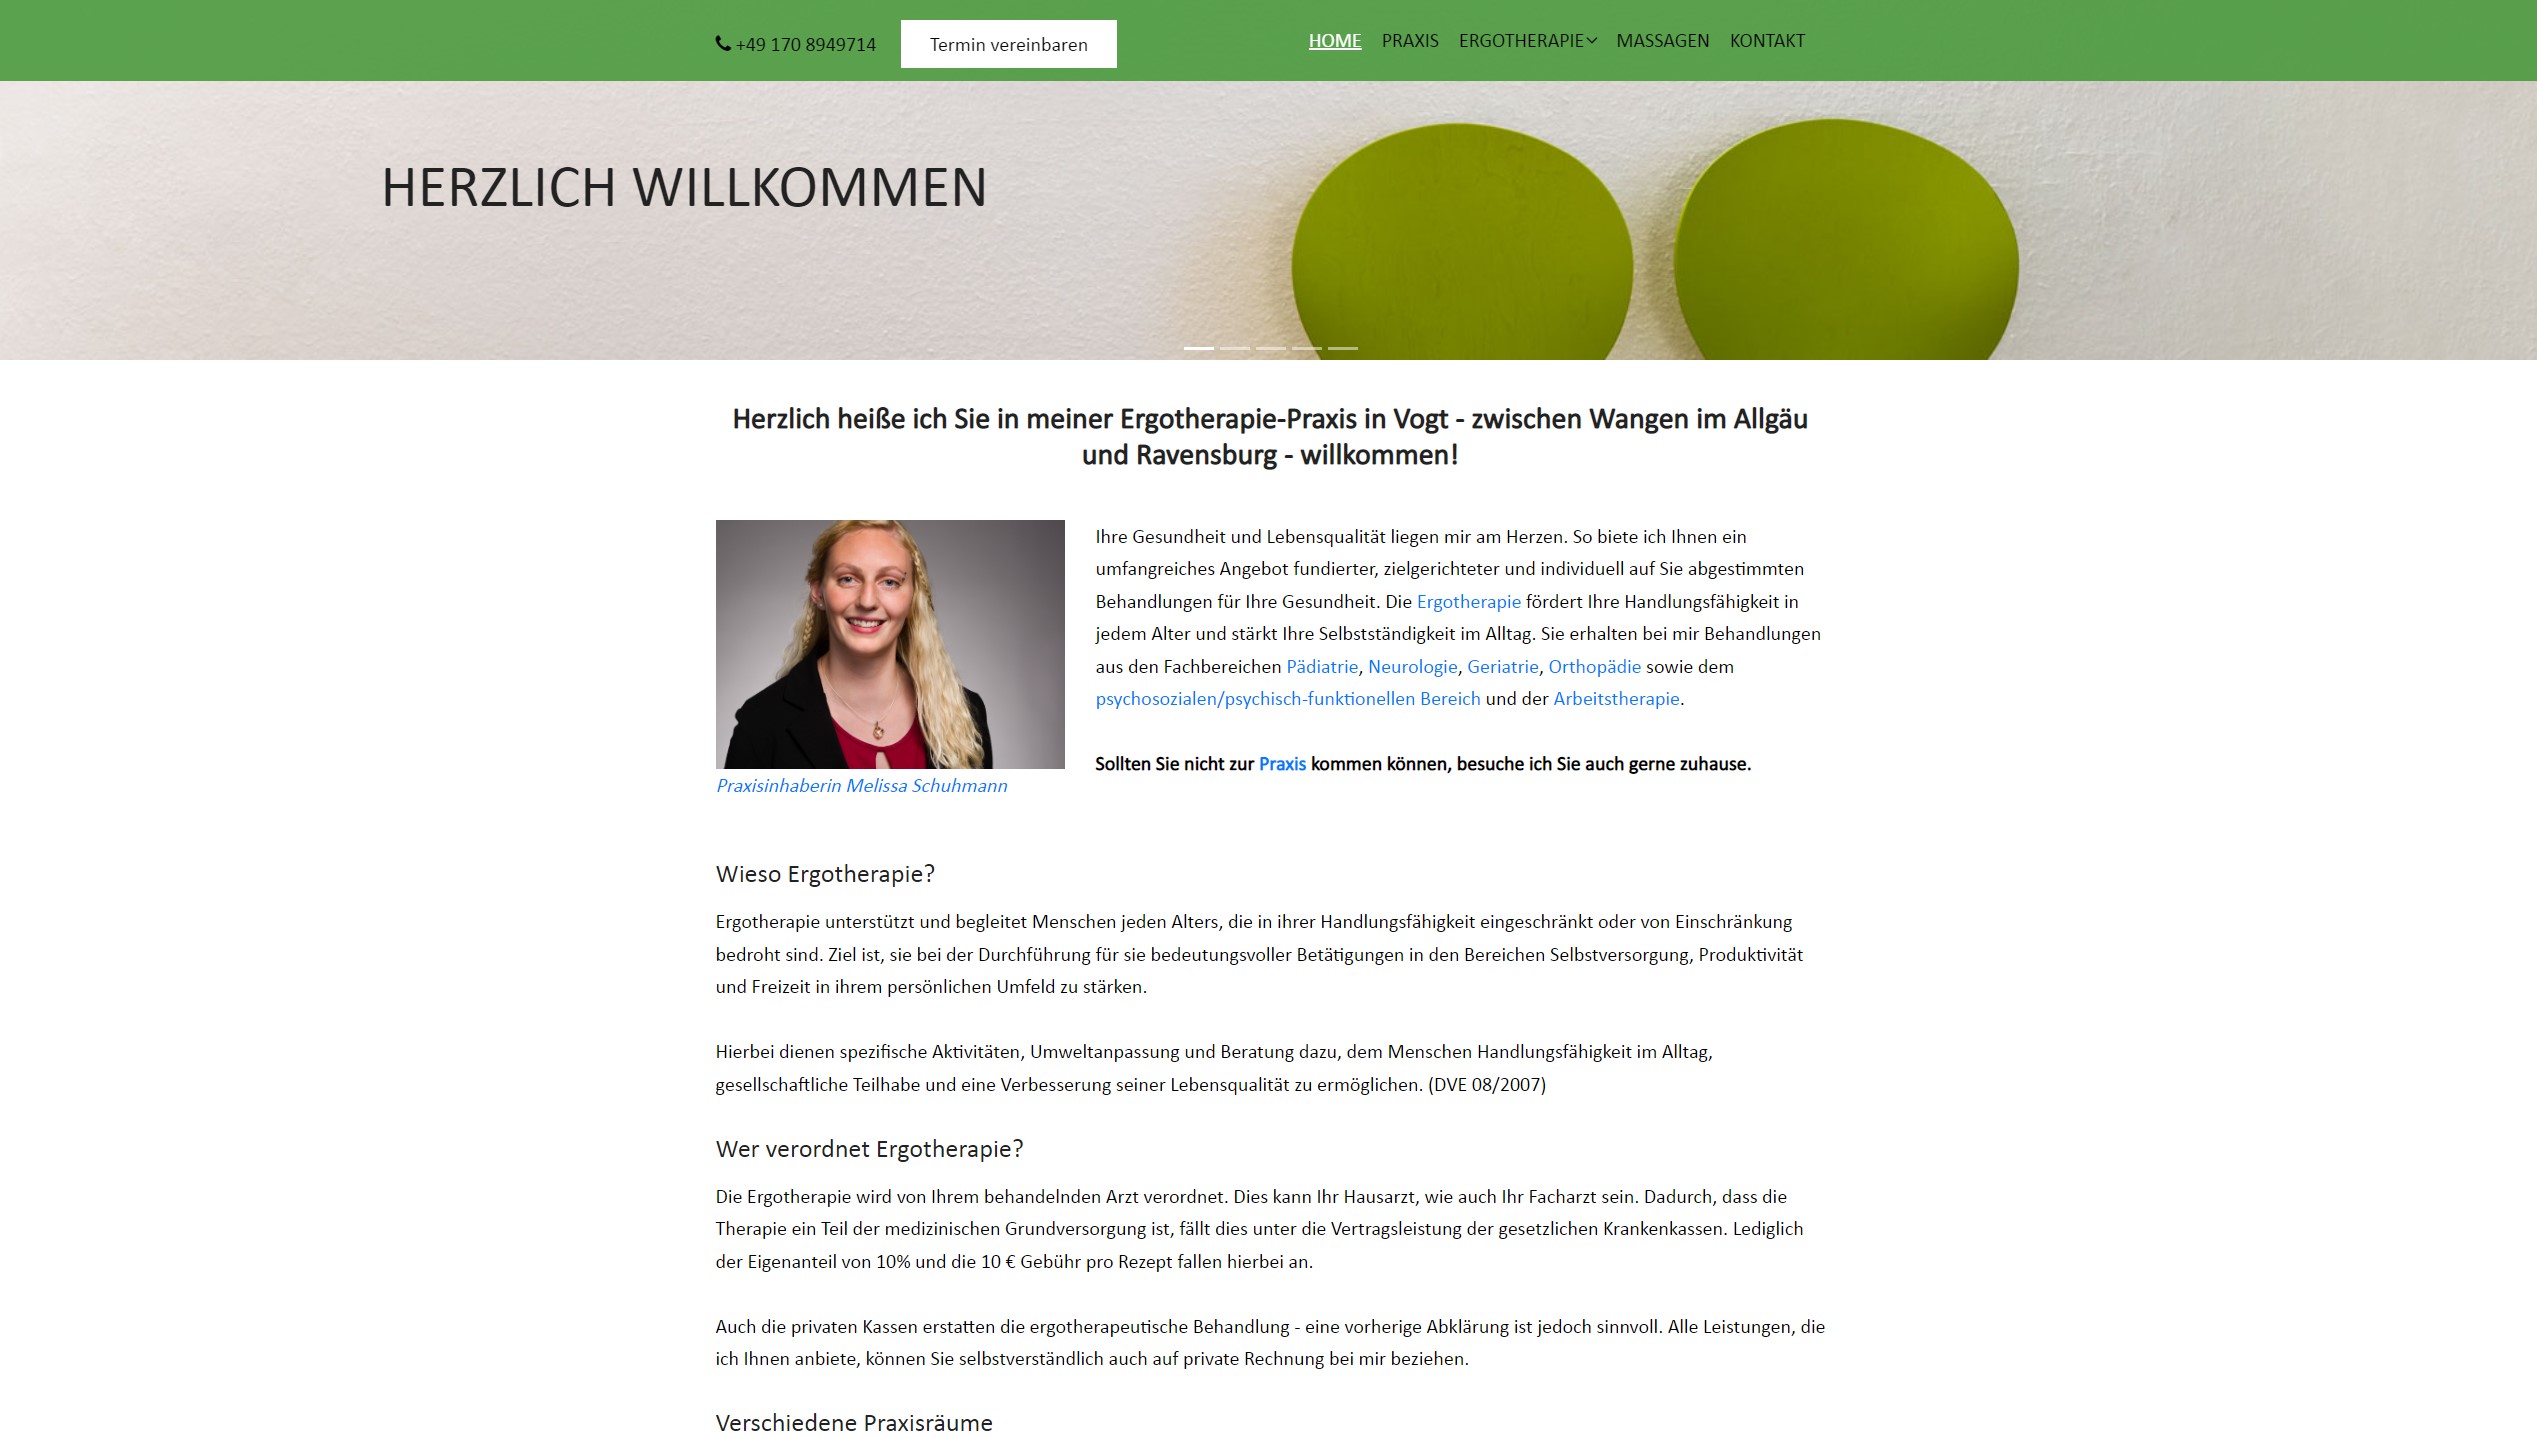 Für die Ergotherapie Melissa Schuhmann wurde kein WordPress verwendet, um das System ohne Updates zu betreiben